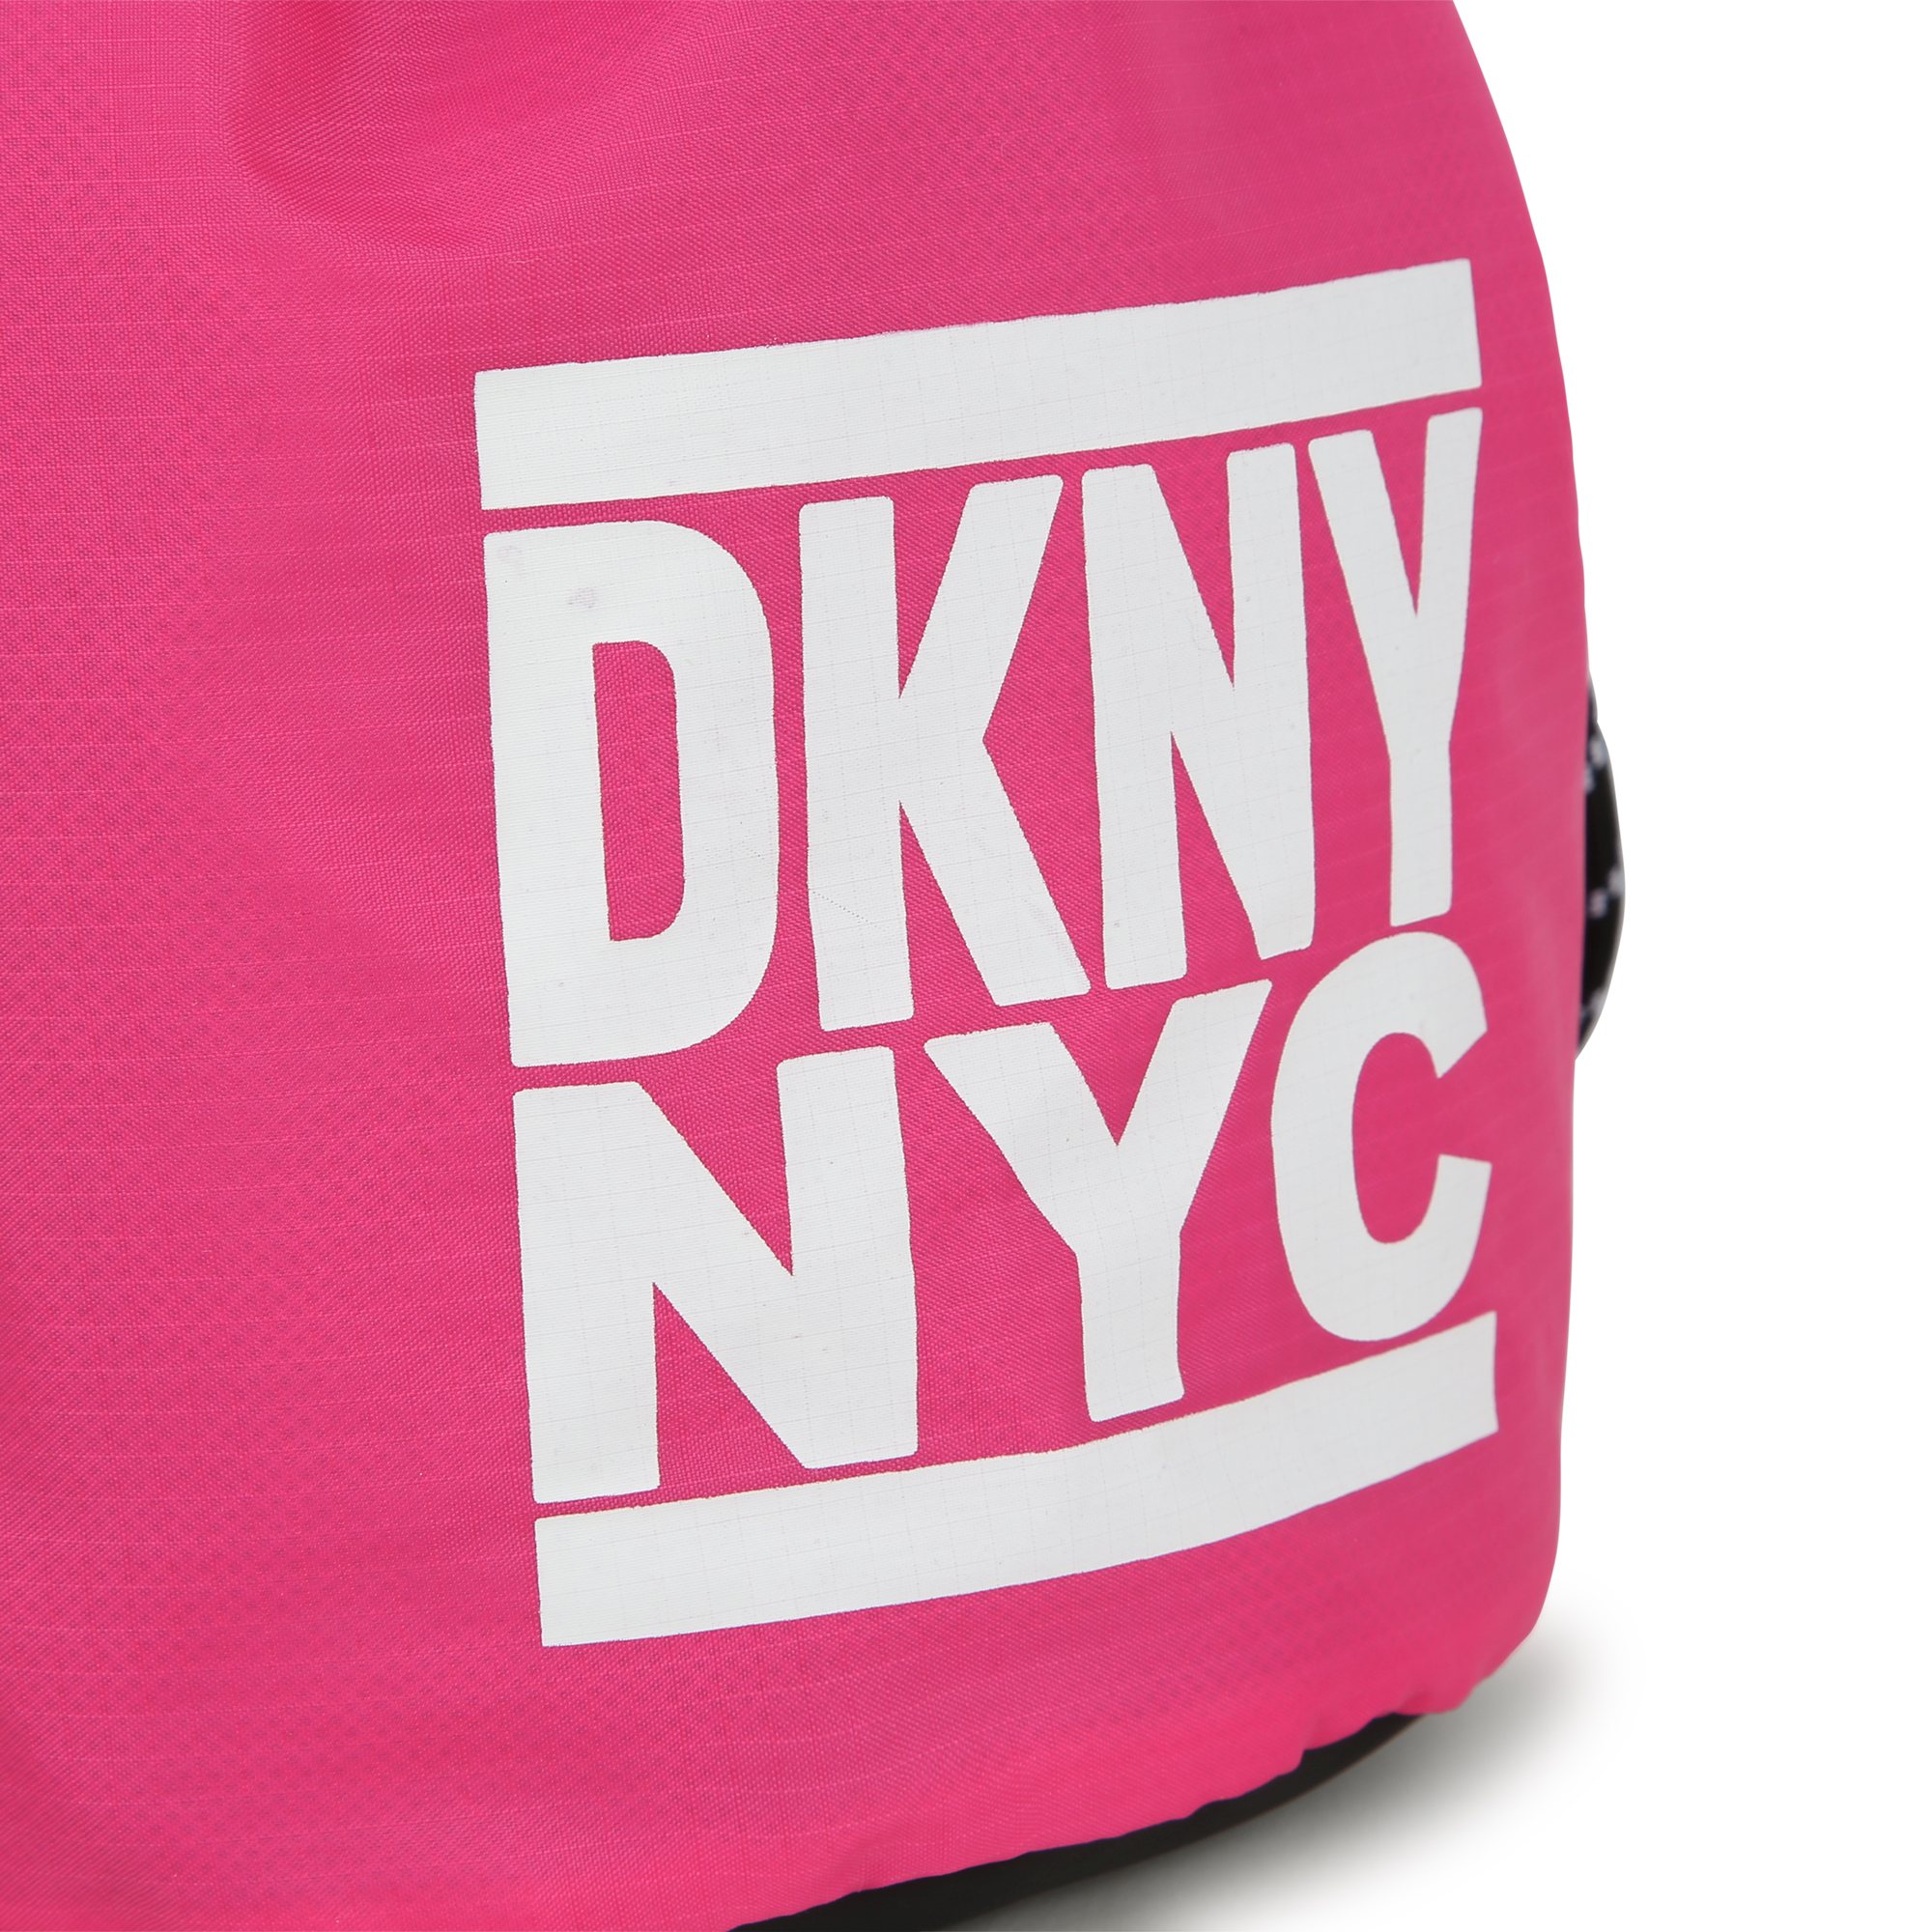 Omkeerbare handtas DKNY Voor